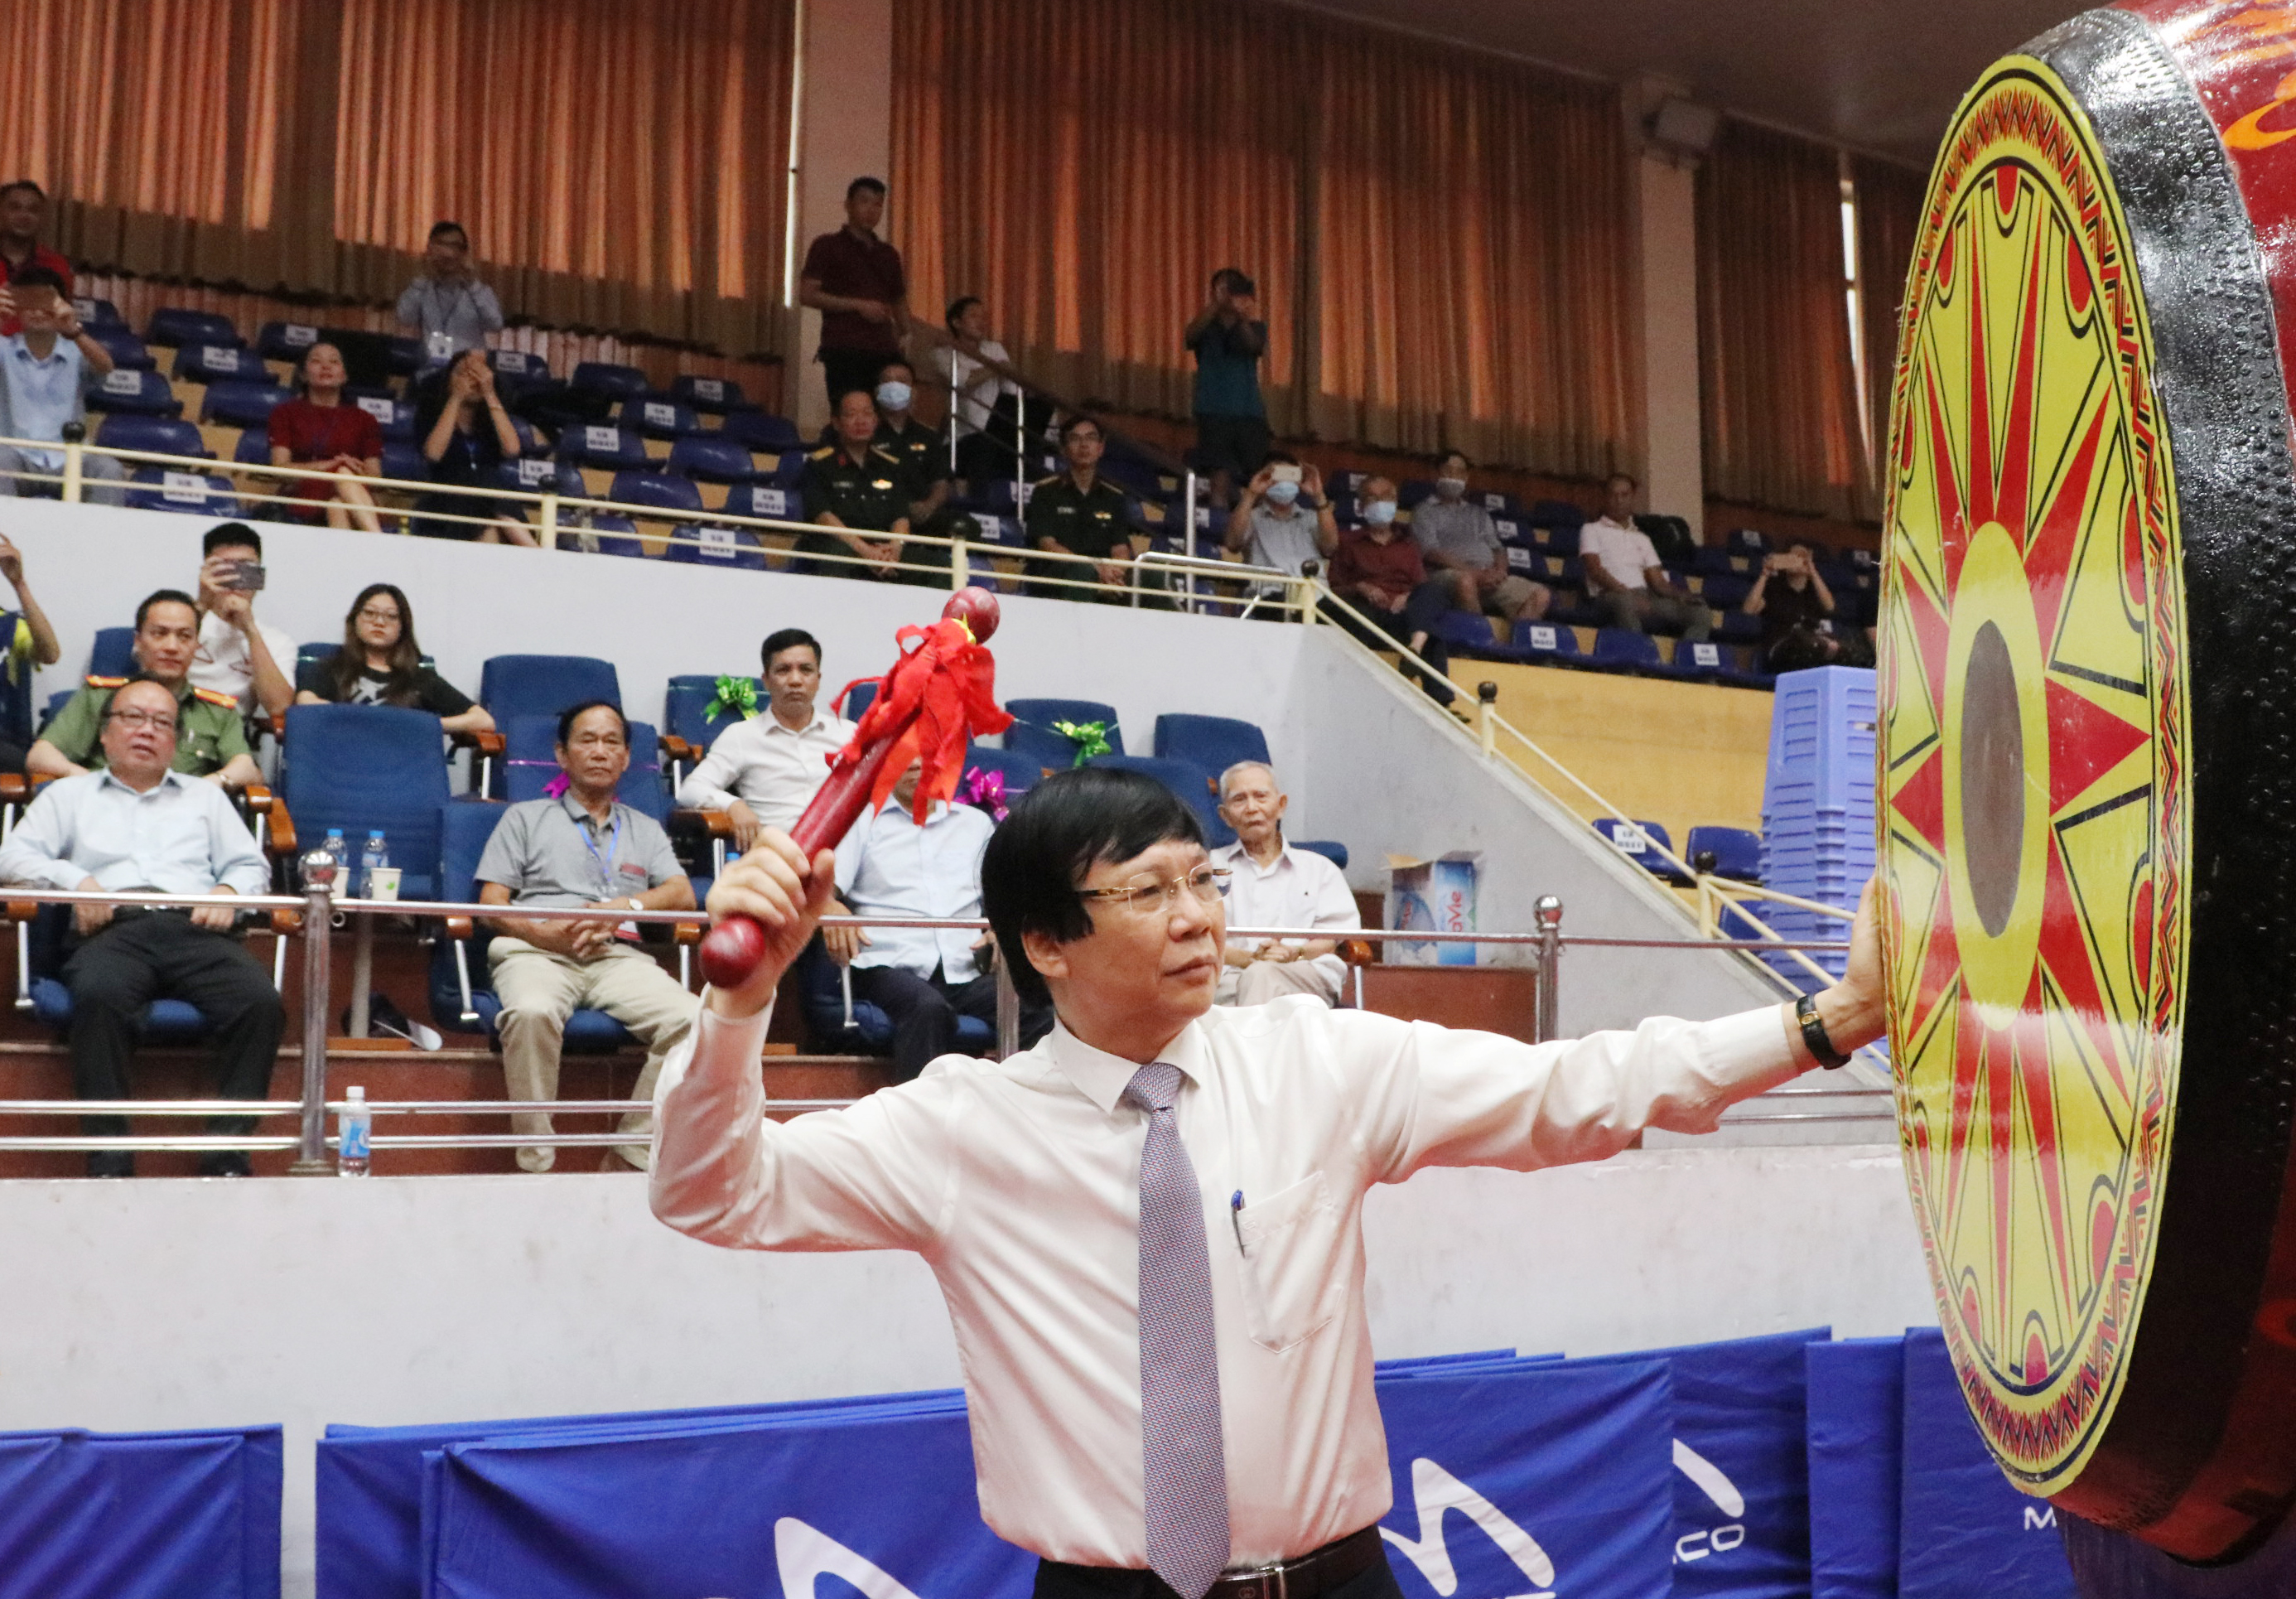 Ông Hồ Quang Lợi, Phó Chủ tịch Thường trực Hội Nhà báo Việt Nam đánh trống khai mạc giải đấu